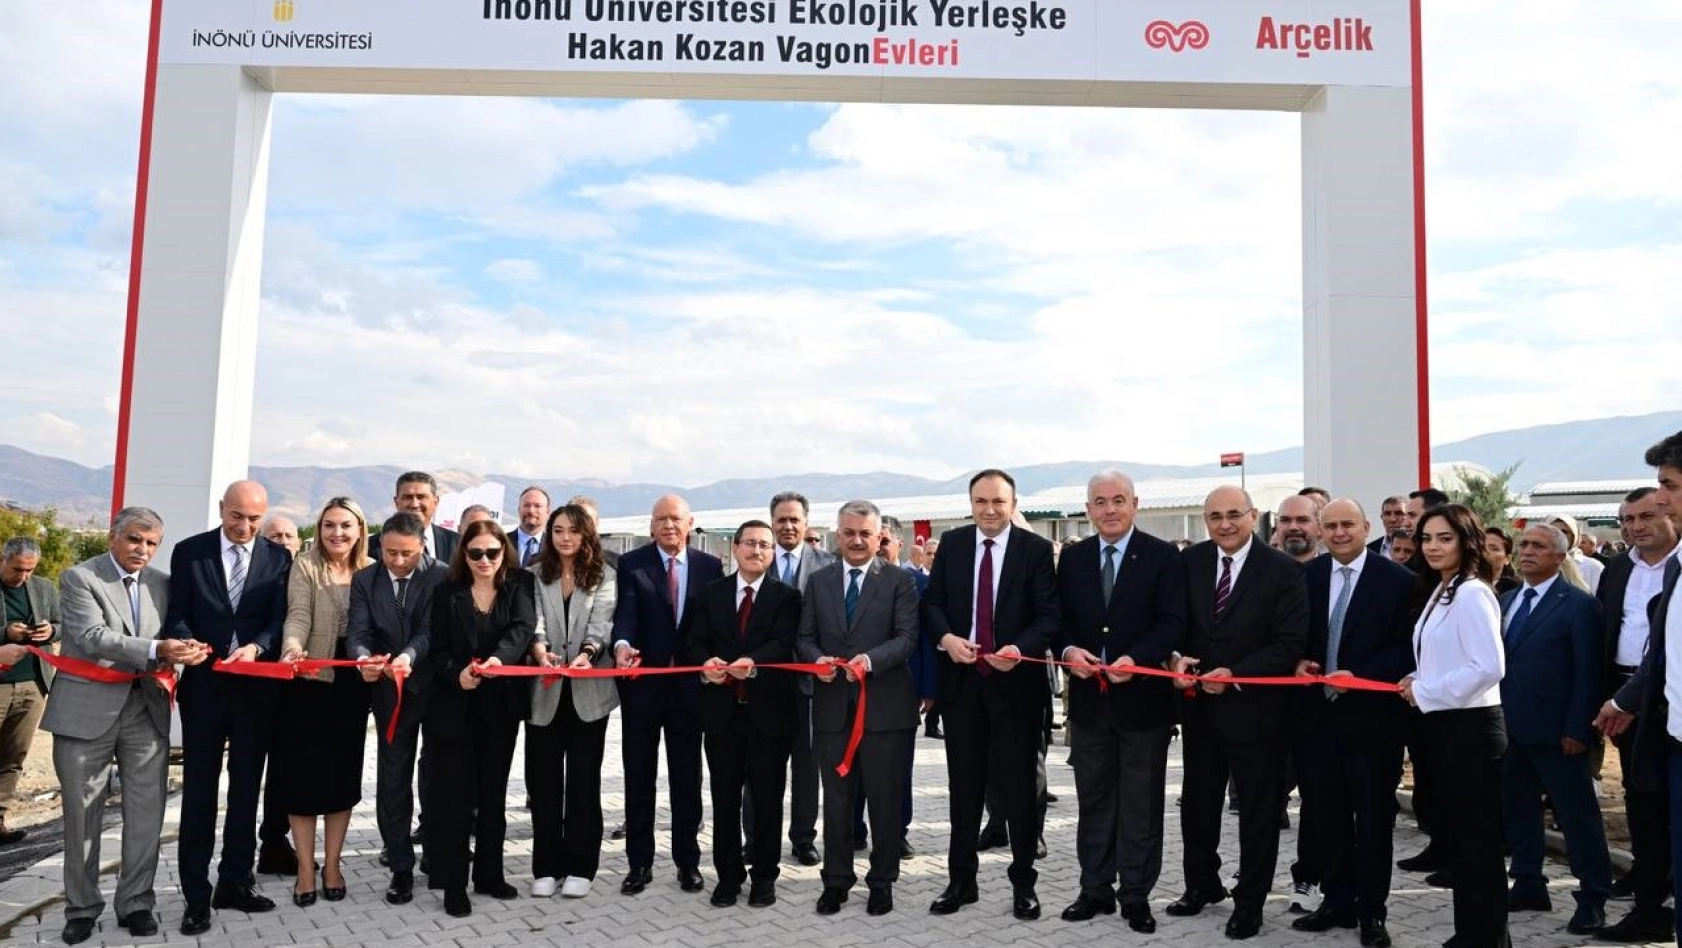 Malatya'da Vagonevlerin açılışı gerçekleştirildi